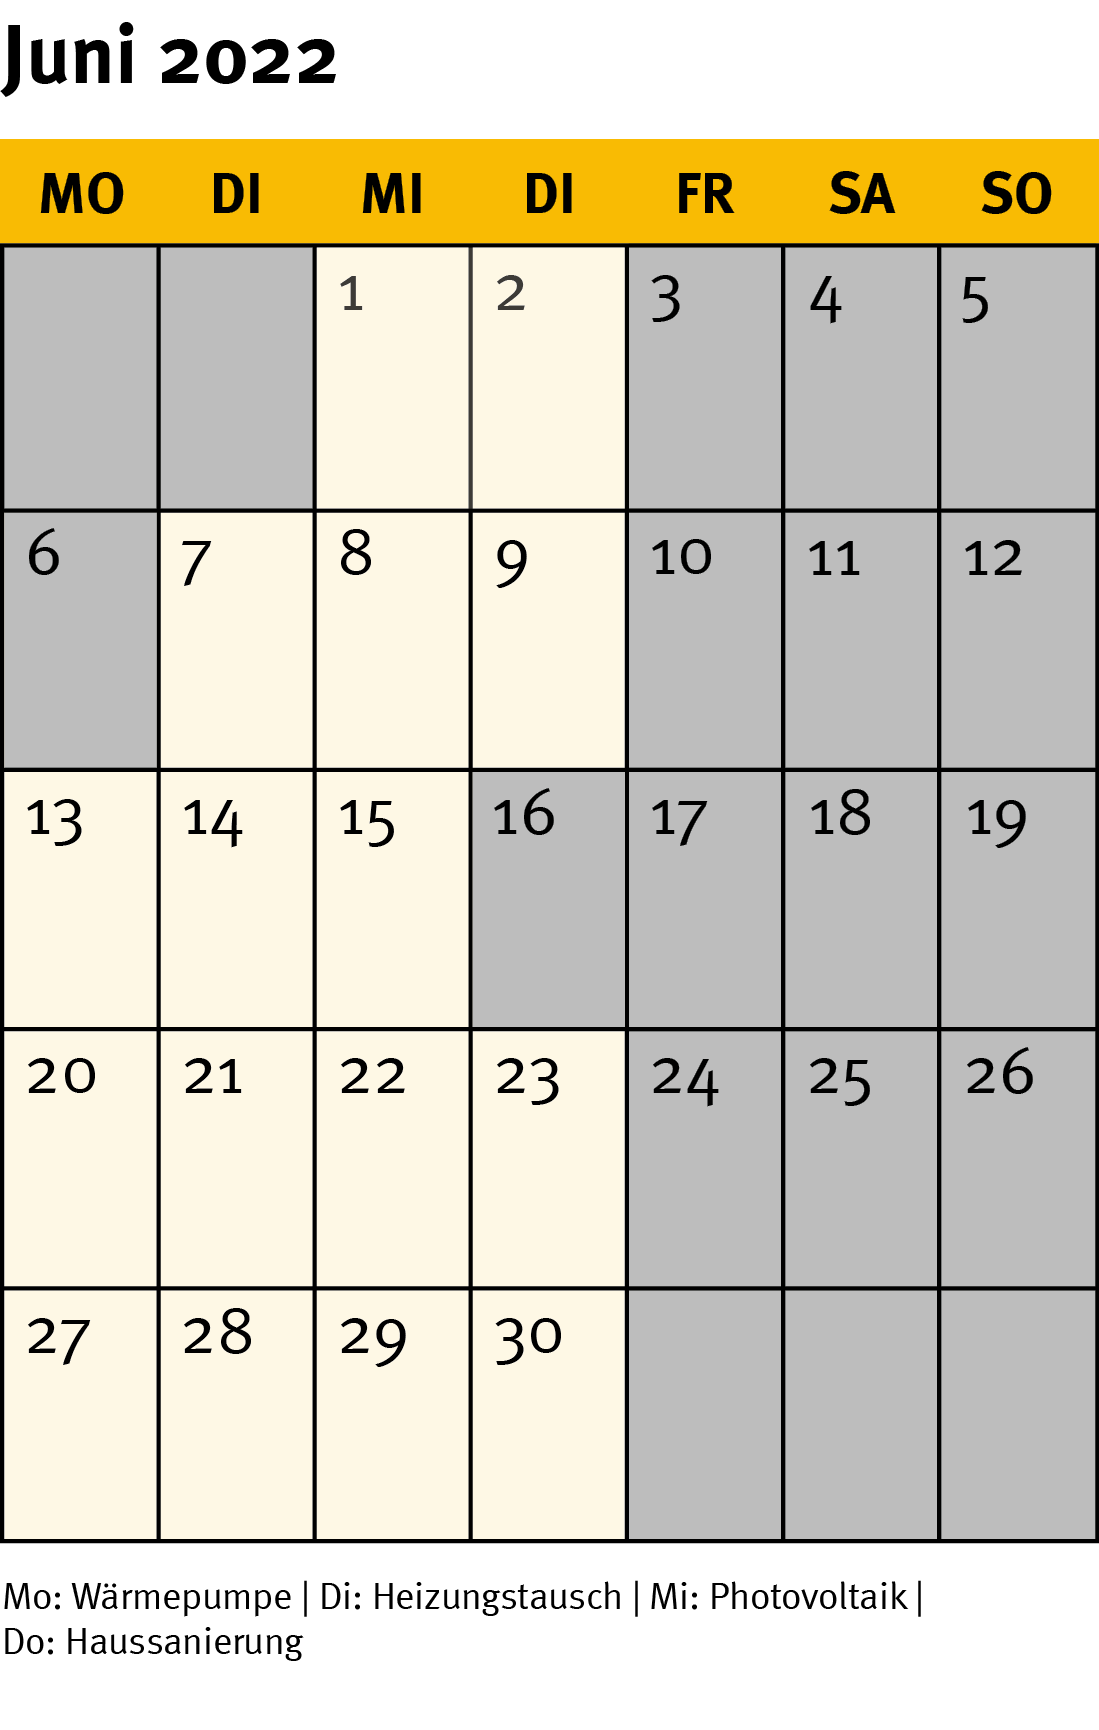 Die Grafik zeigt ein Kalenderblatt für den Monat Juni 2022.